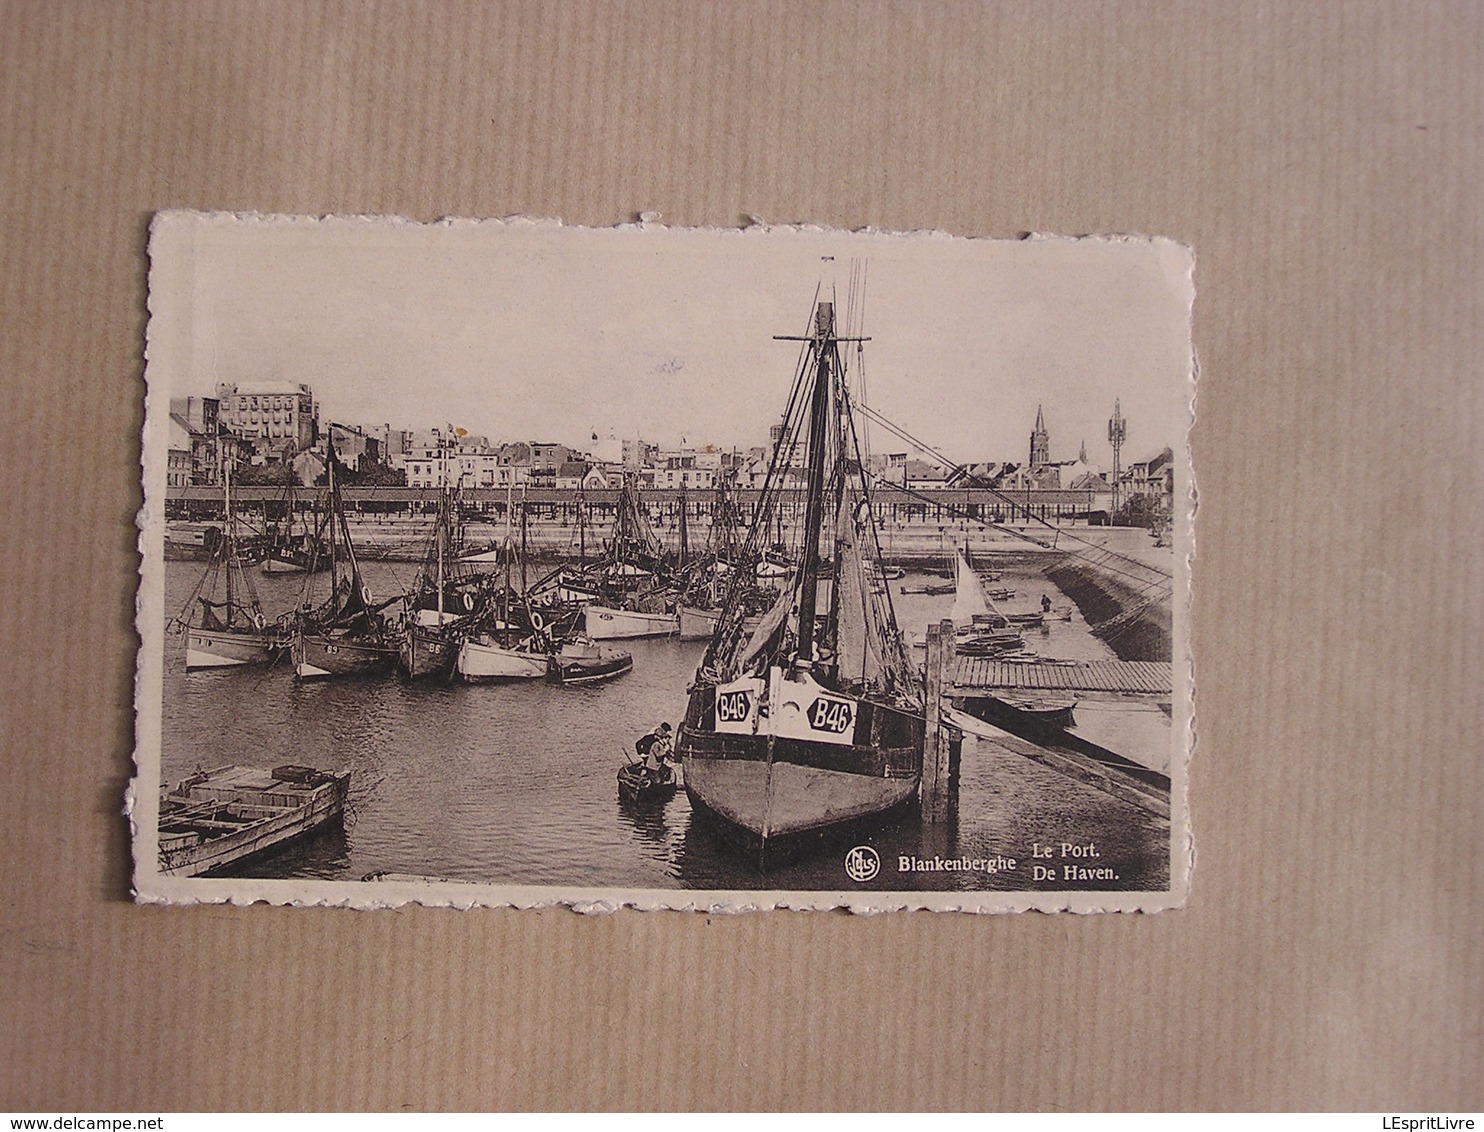 BLANKENBERGE De Haven Le Port Blankenberghe België Belgique Carte Postale Postcard - Blankenberge